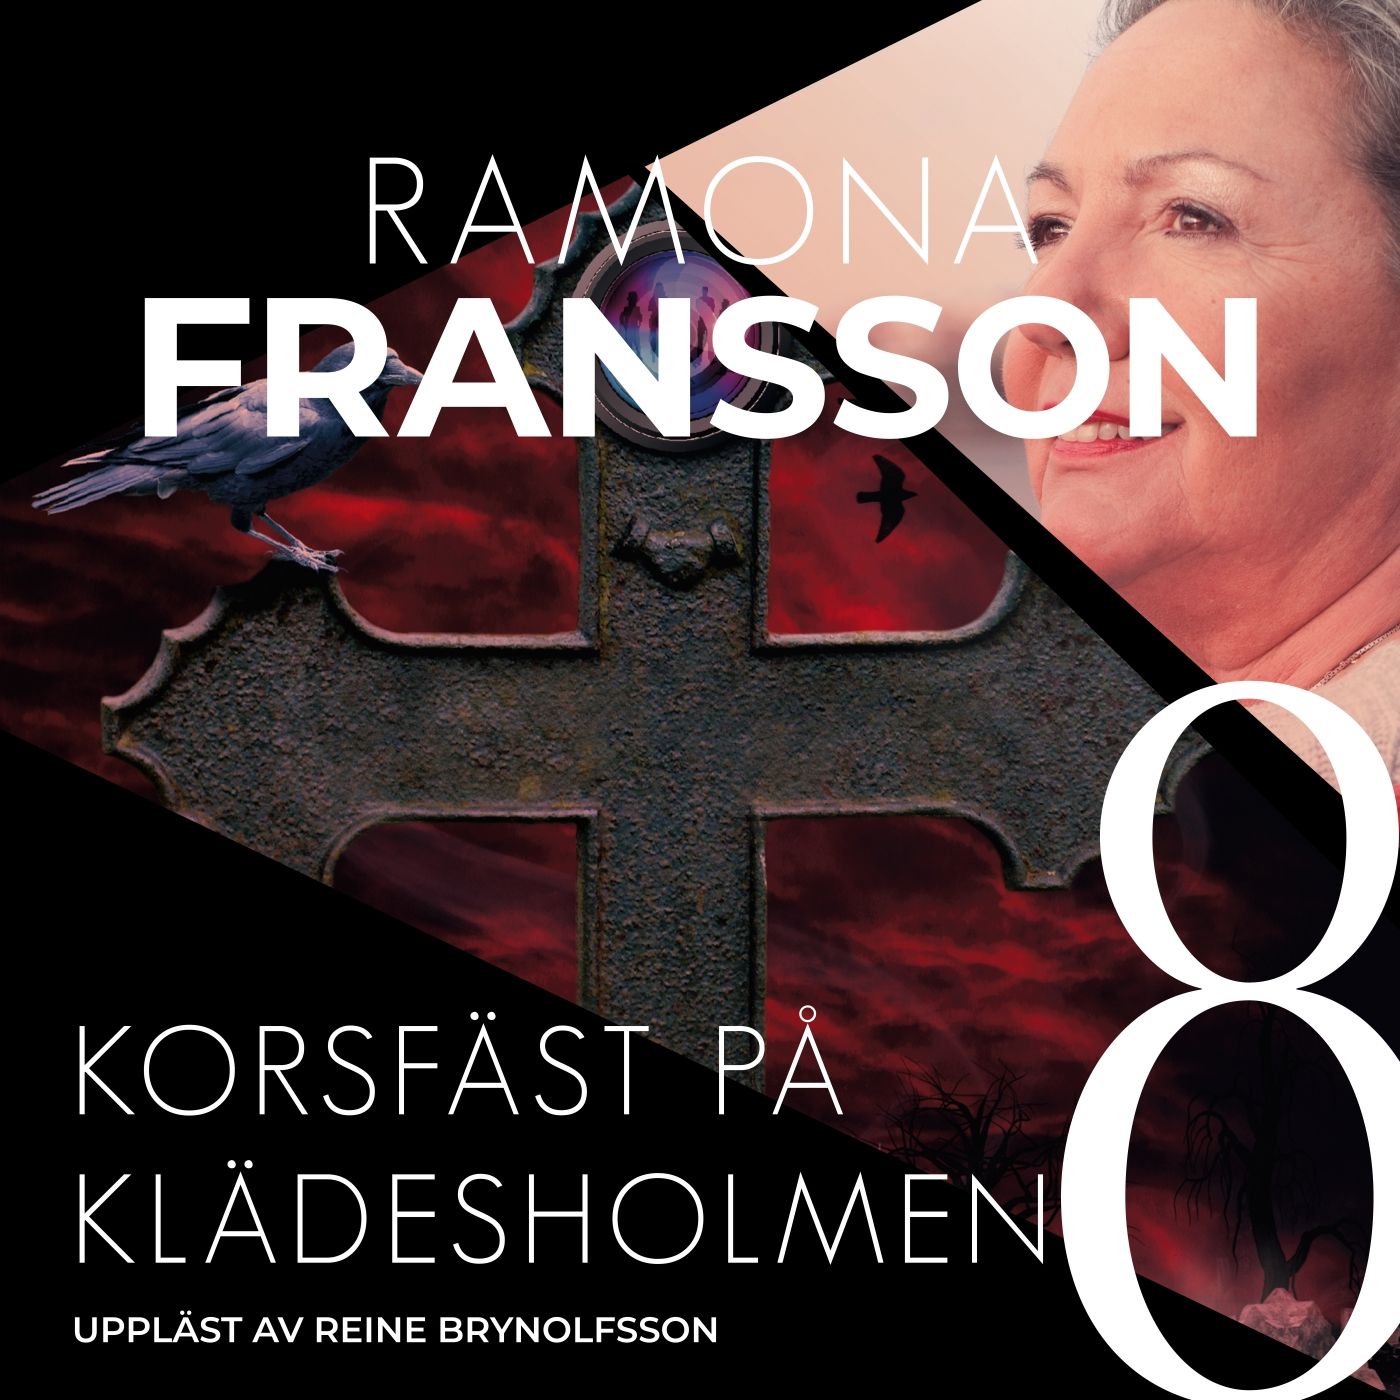 Korsfäst på Klädesholmen, ljudbok av Ramona Fransson